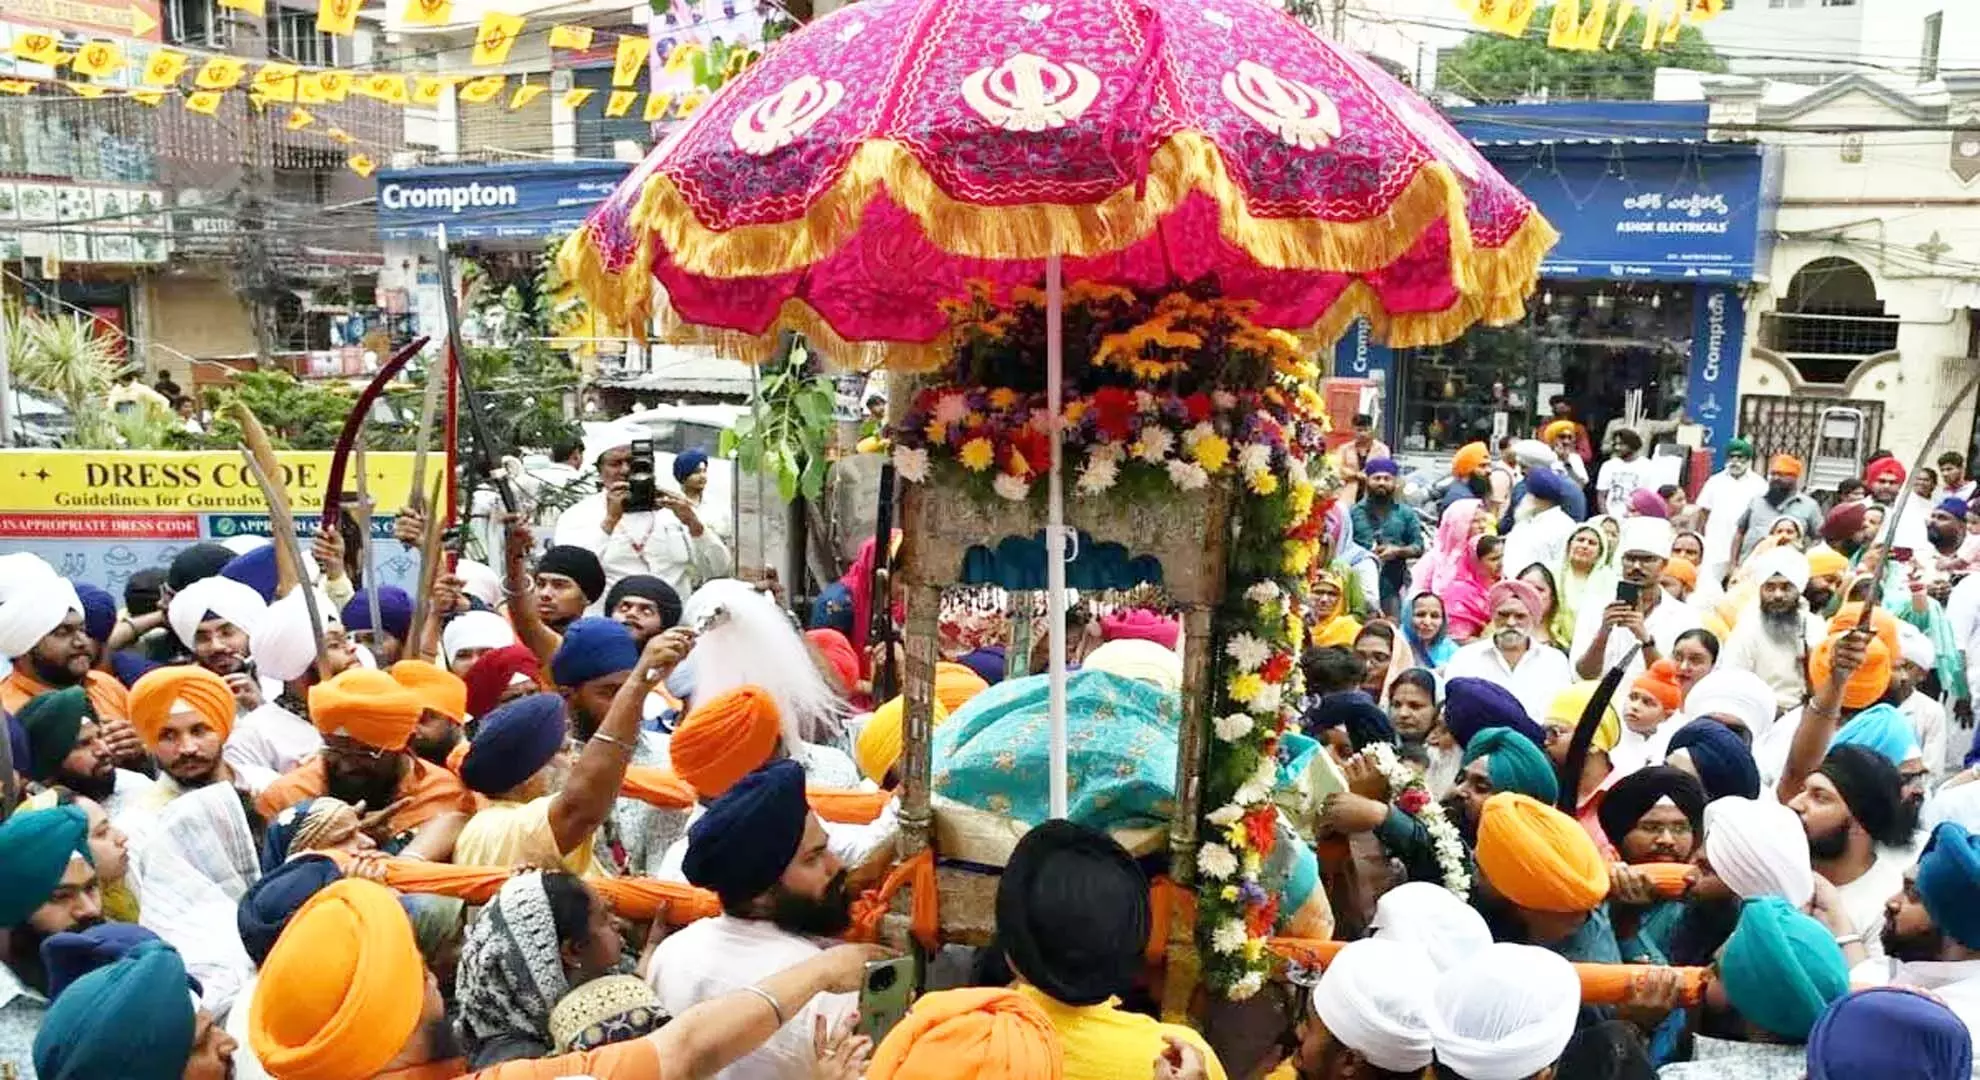 हैदराबाद: उत्सव का उत्साह सिखों के खालसा पंथ का प्रतीक है